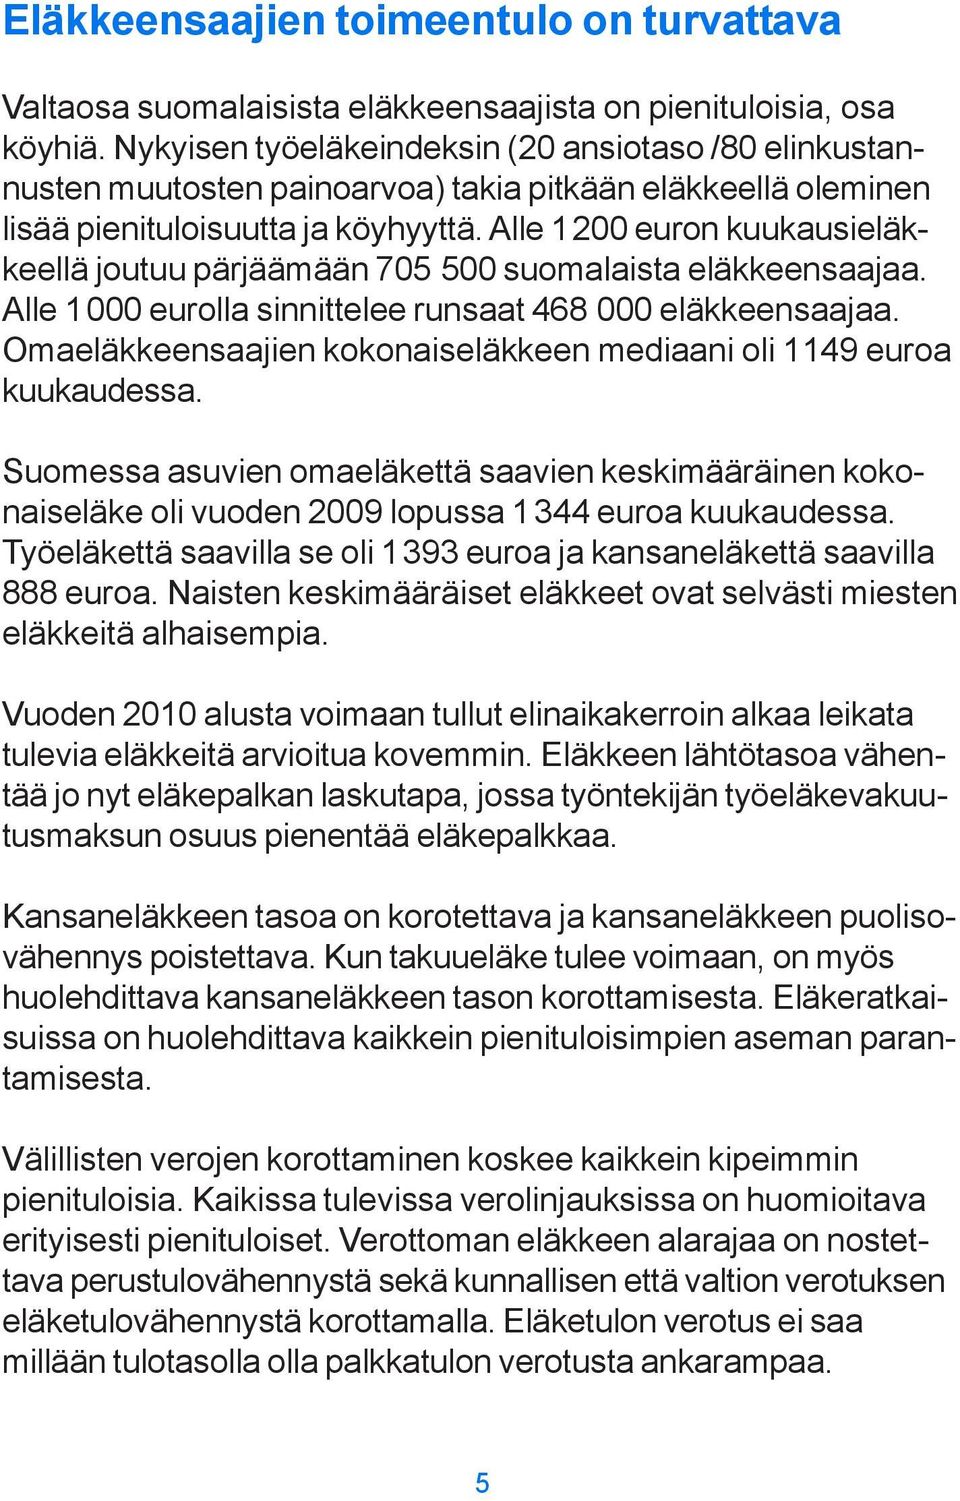 Alle 1200 euron kuukausieläkkeellä joutuu pärjäämään 705 500 suomalaista eläkkeensaajaa. Alle 1000 eurolla sinnittelee runsaat 468 000 eläkkeensaajaa.